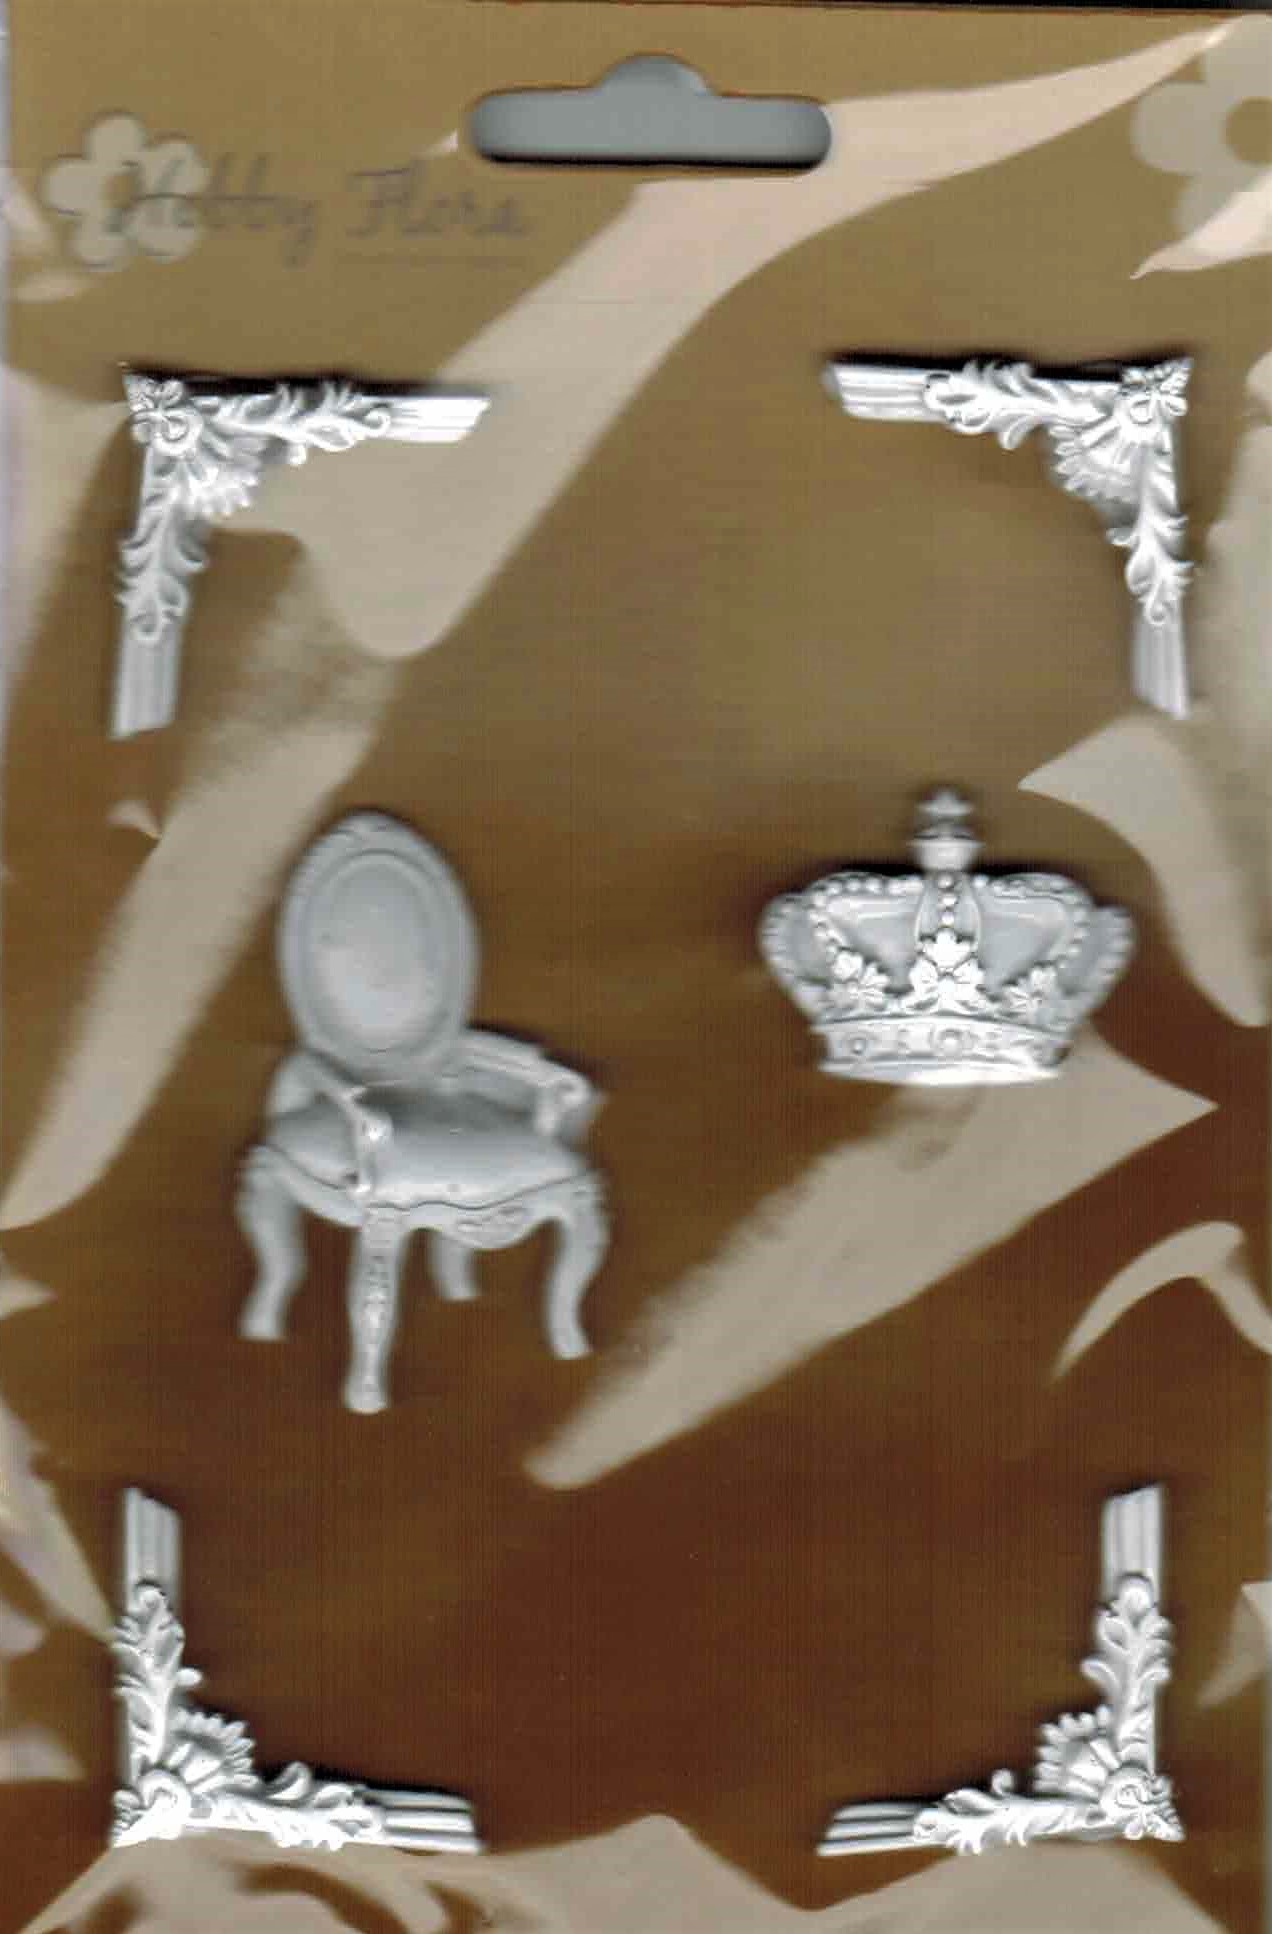  354121-995-4 Figurki z masy żywicznej -krzesło,narożniki - 6szt